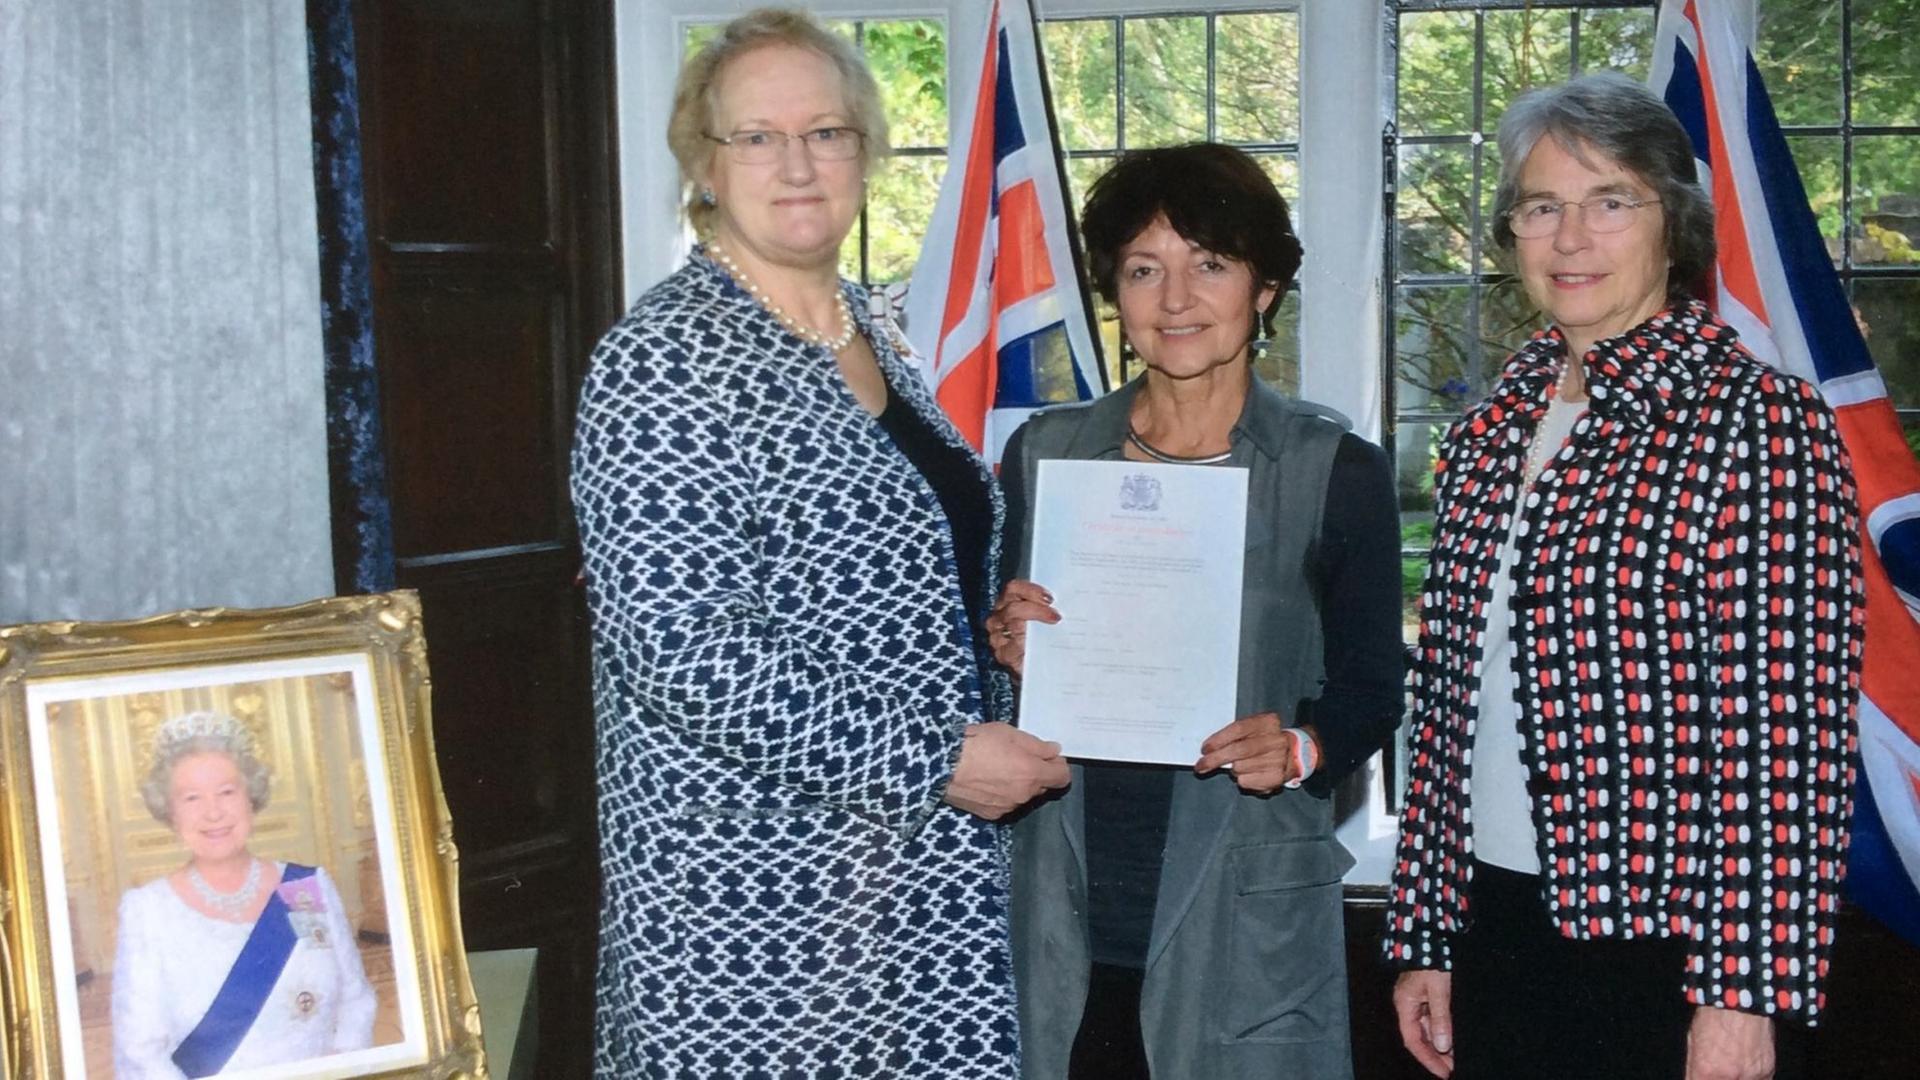 Ruth Rach bei ihrer Einbürgerung im südenglischen Städtchen Lewes. Links neben ihr steht die Vertreterin der Königin, rechts eine Verwaltungsbeamtin. Links unten ein Bild Königin Elizabeth II.